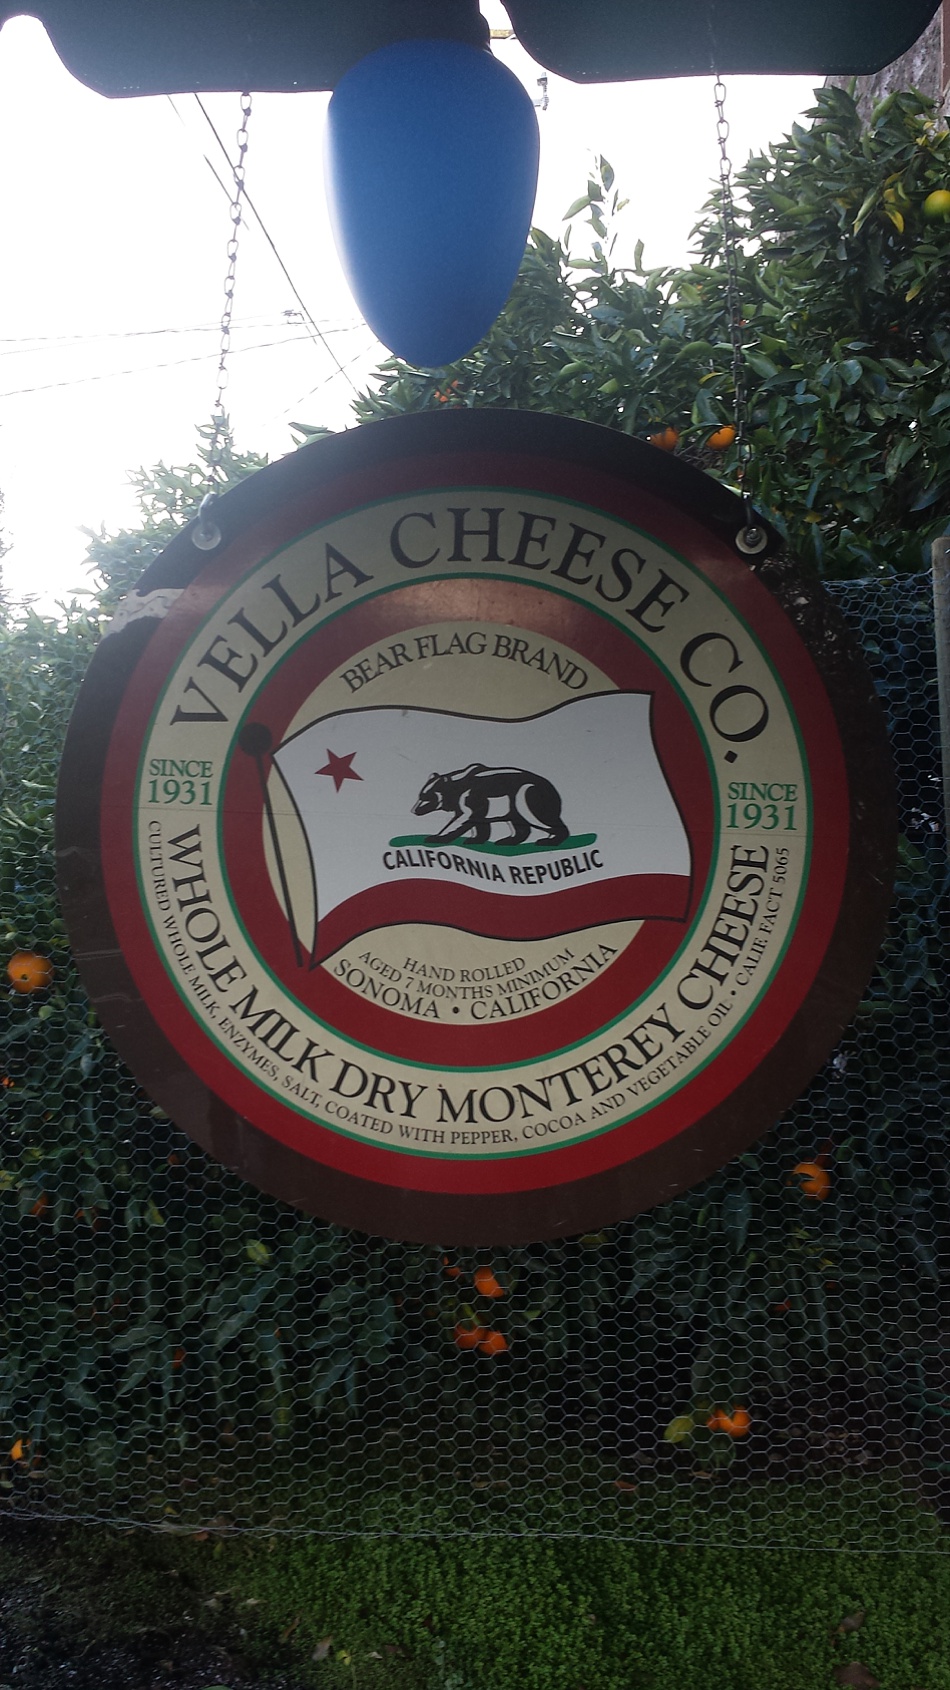 Vella Cheese CO, Sonoma, CA